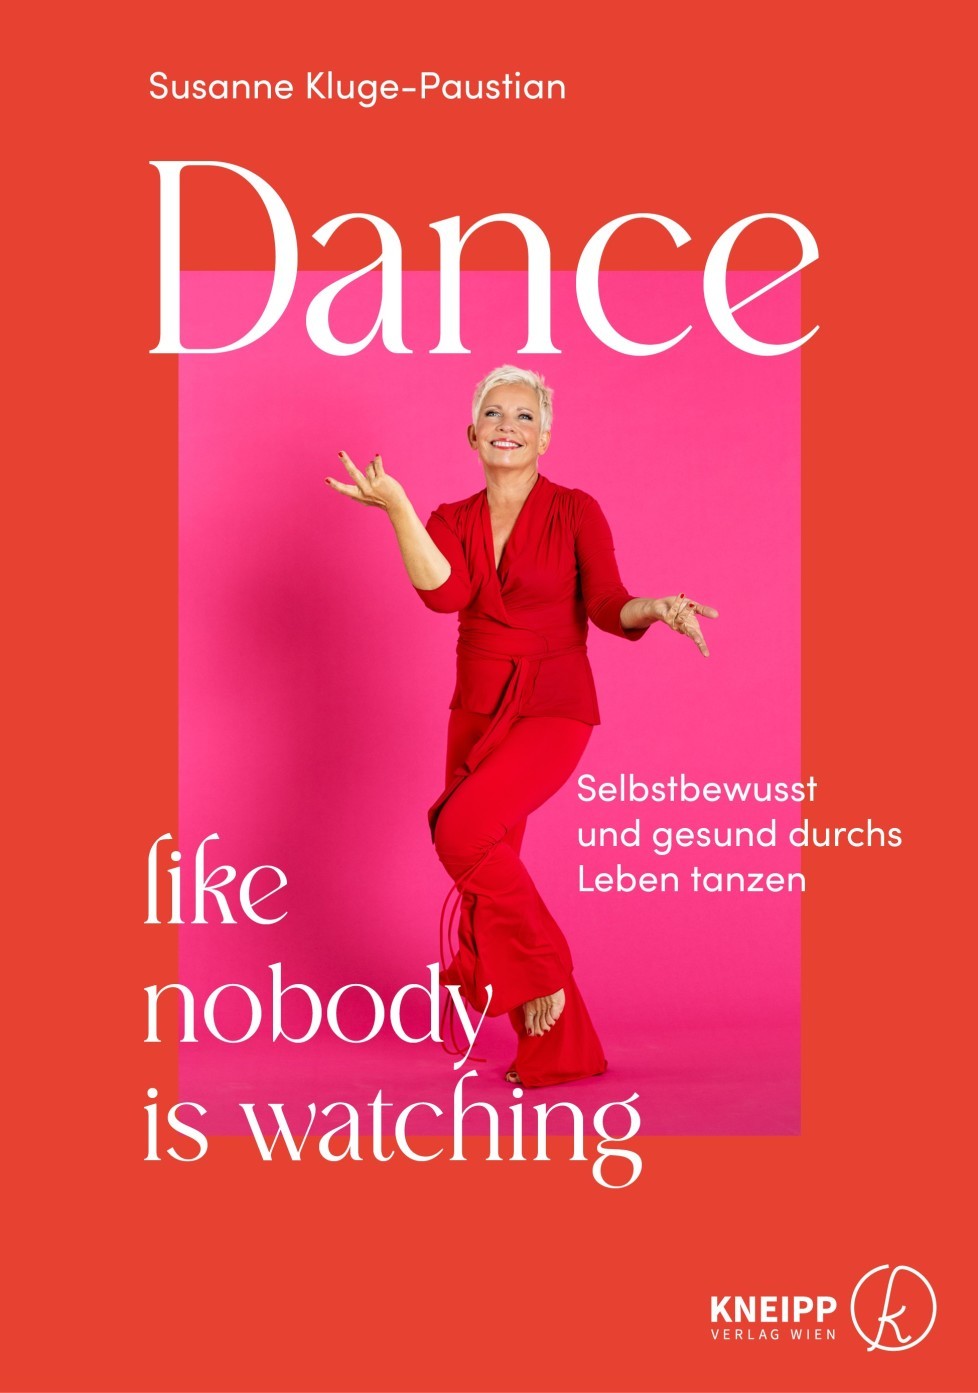 Dance like nobody is watching